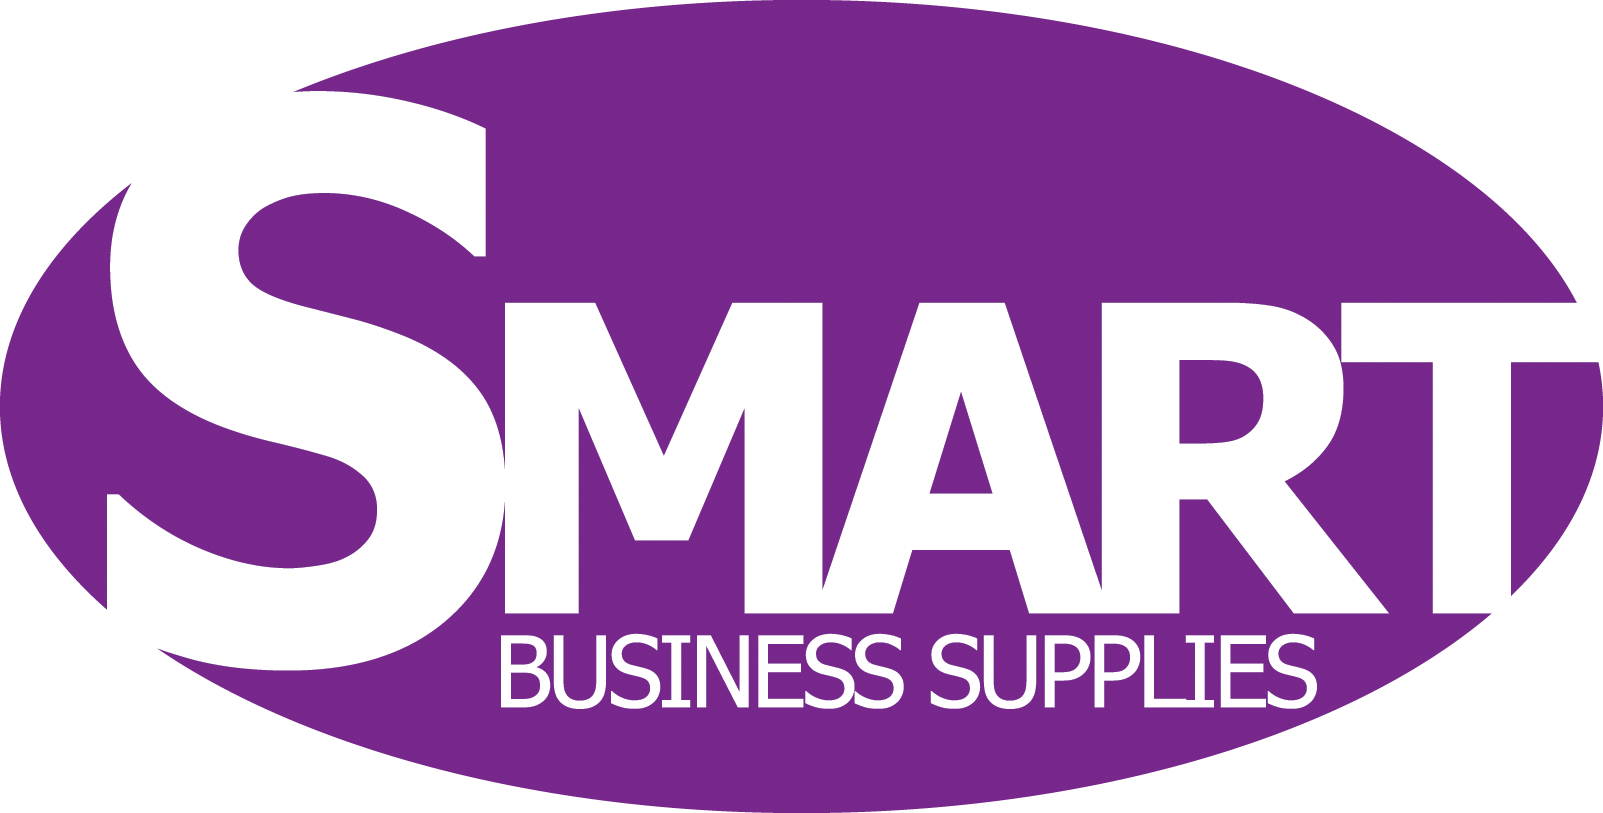 Smart Business Supplies Ltd.